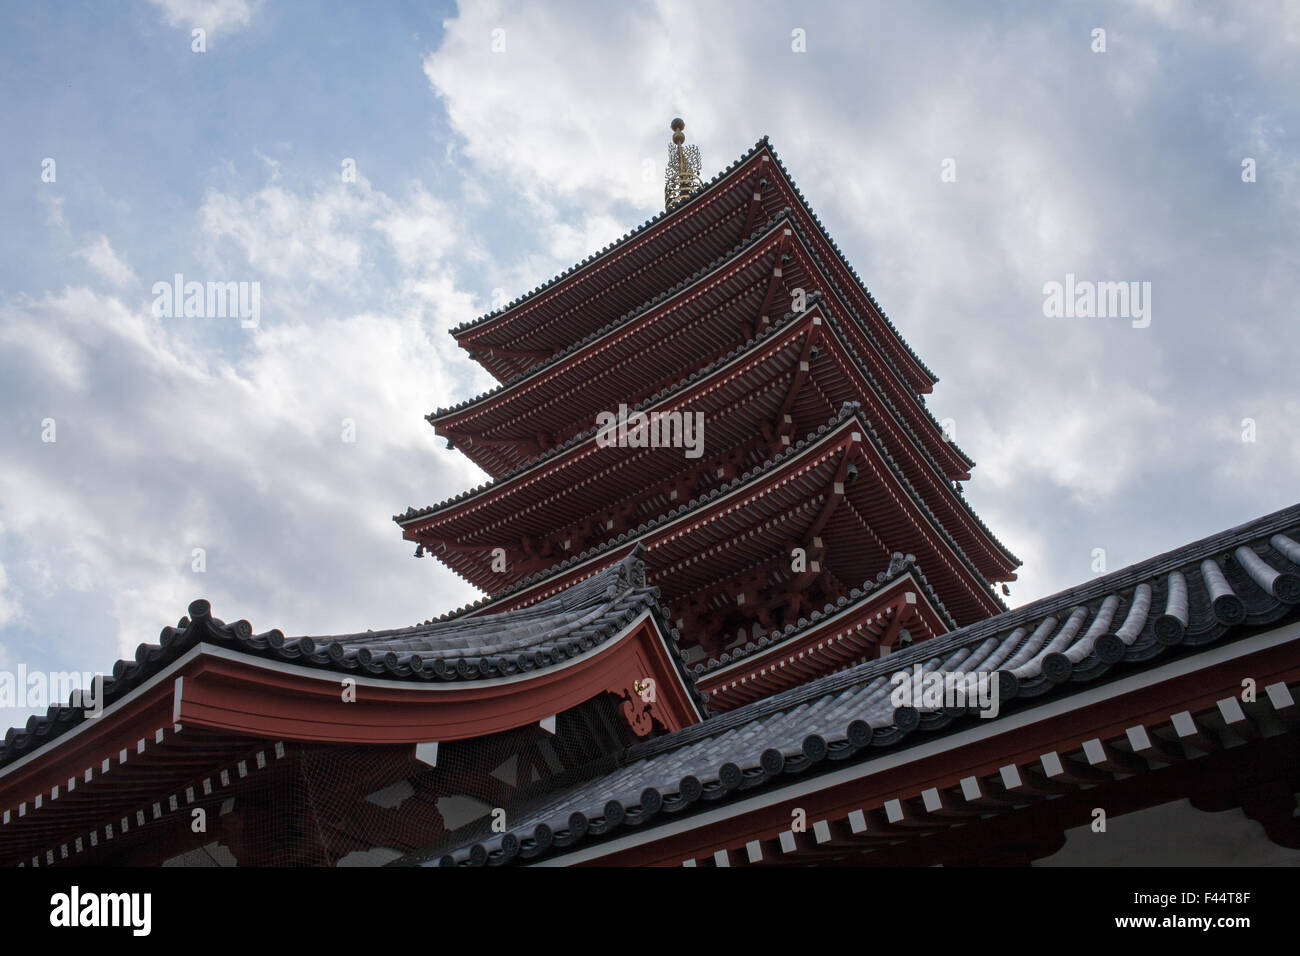 Pagoda rosso e nero tetto di tegole nuvole cielo blu vista laterale Foto Stock